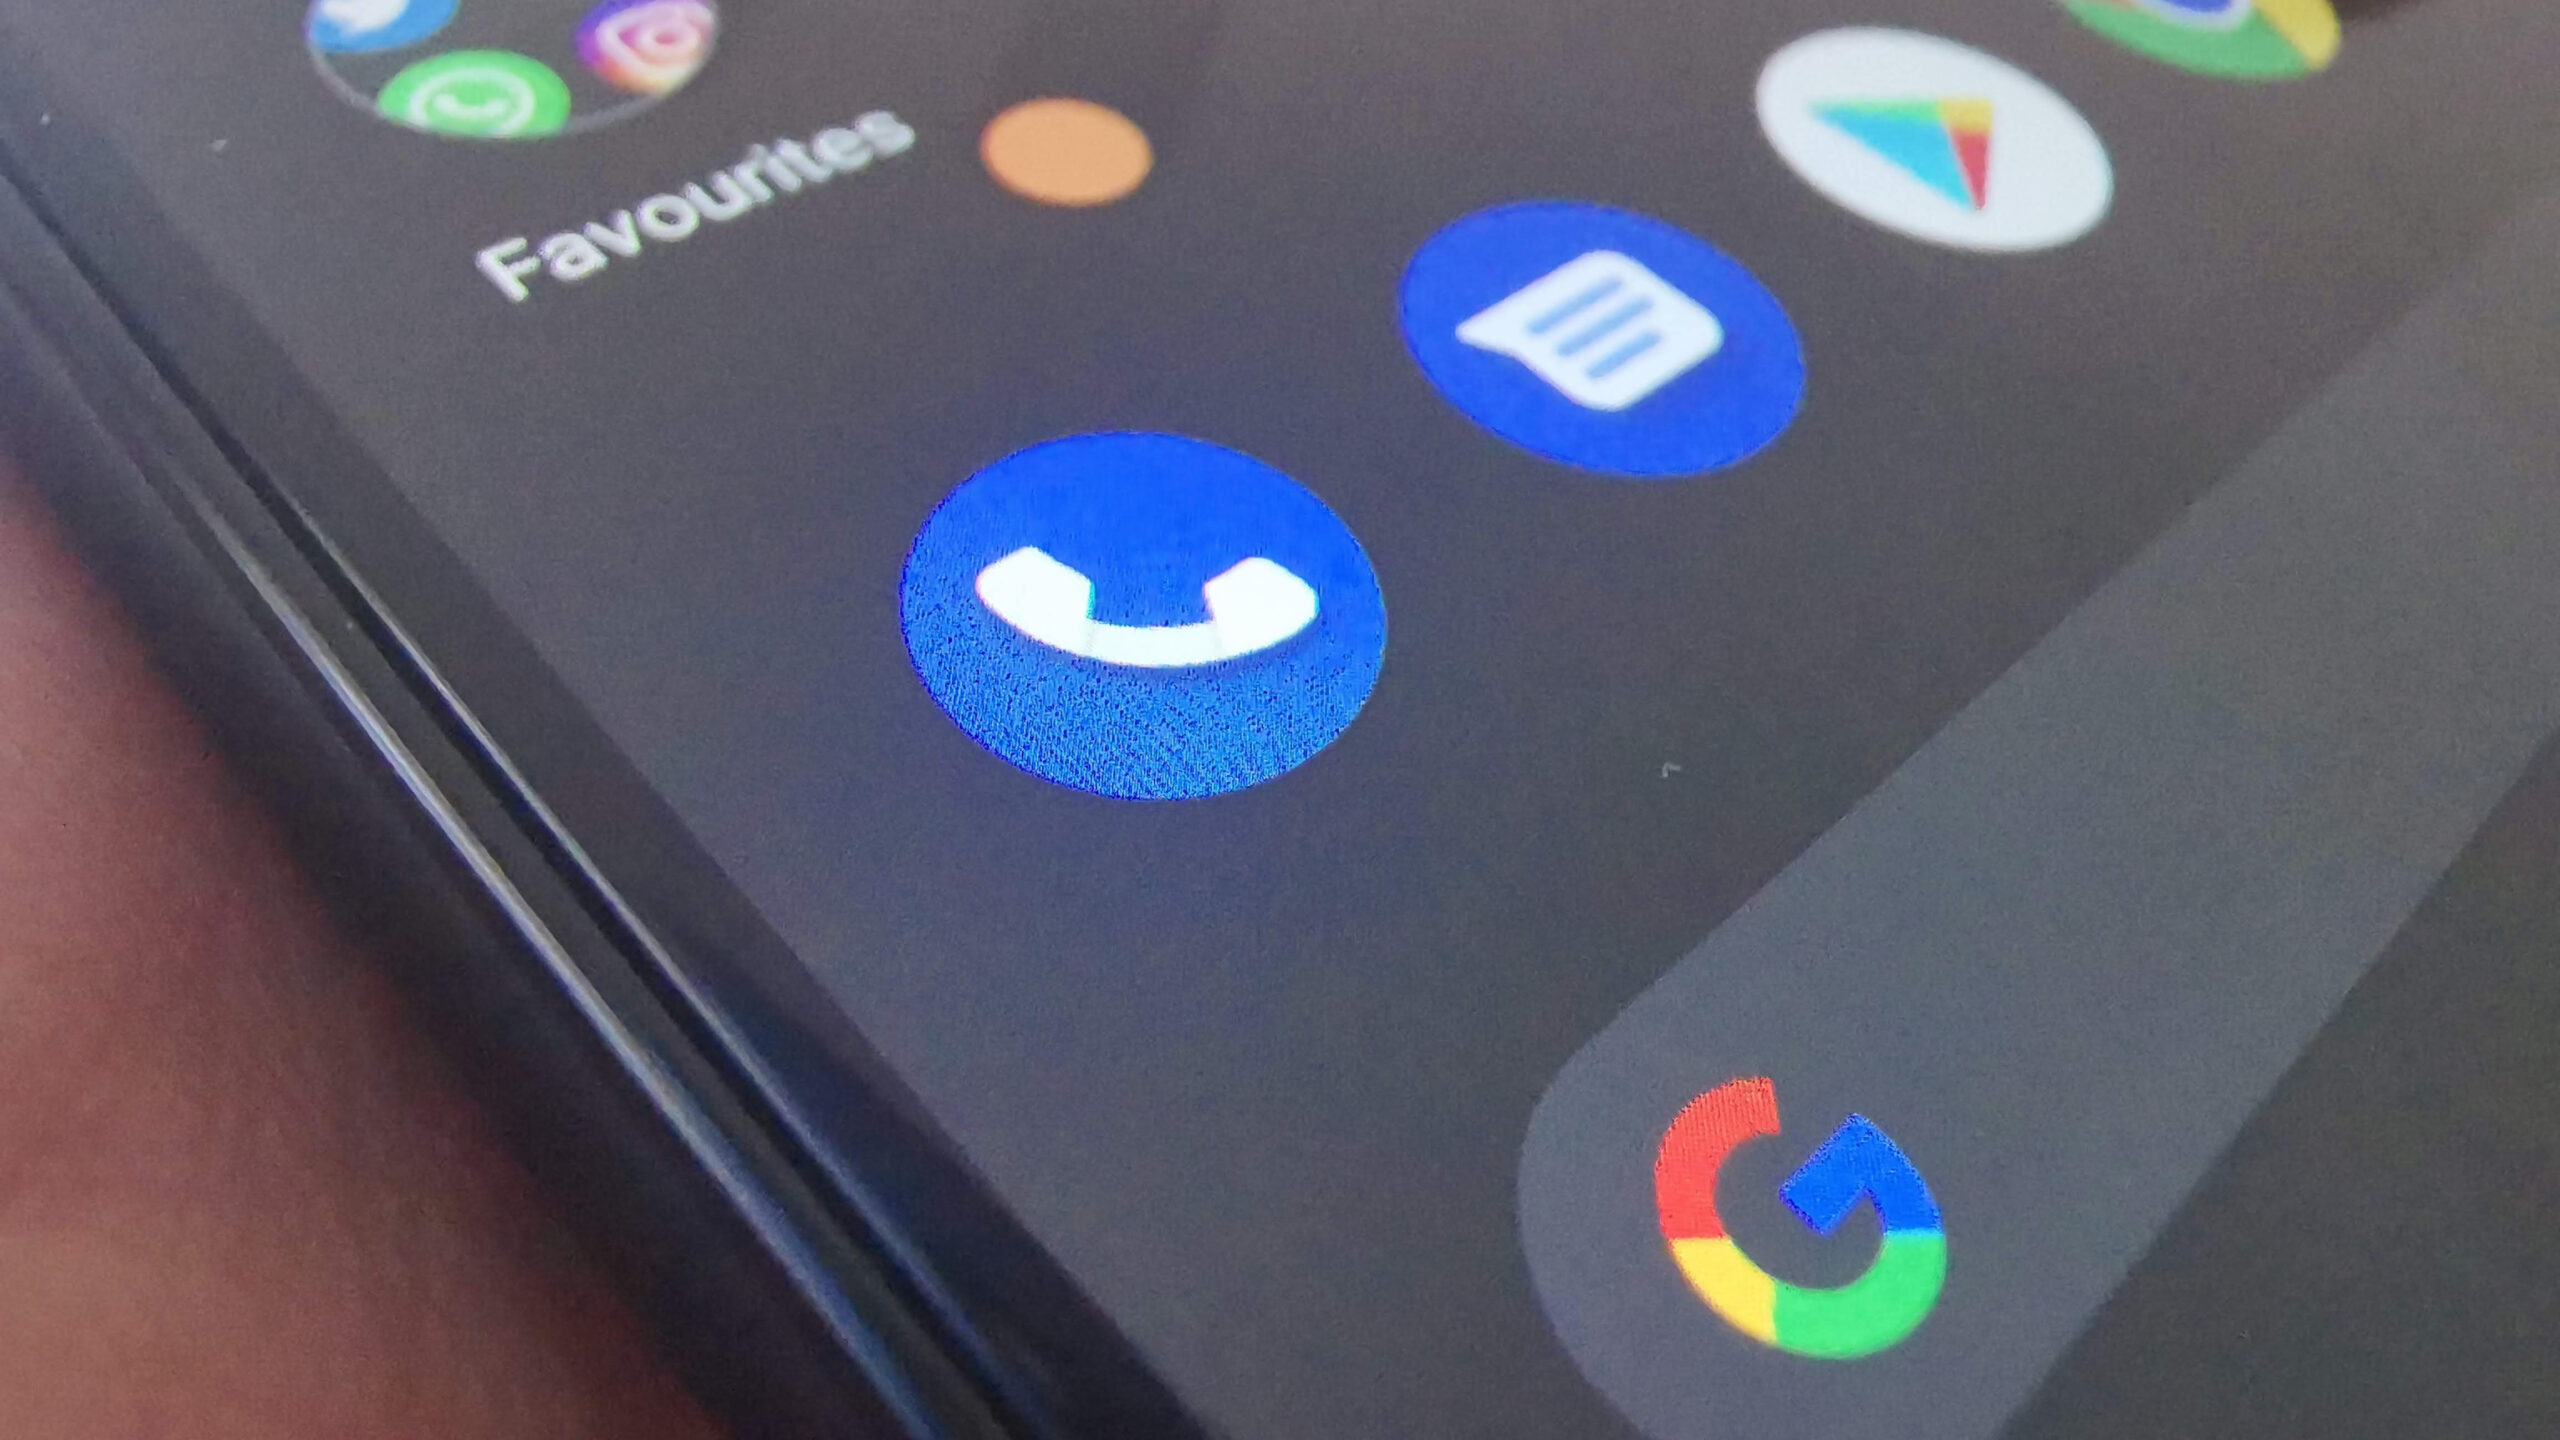 Google et nummer: Google Phone-appen tester en ny funktion - søg efter ukendt nummer